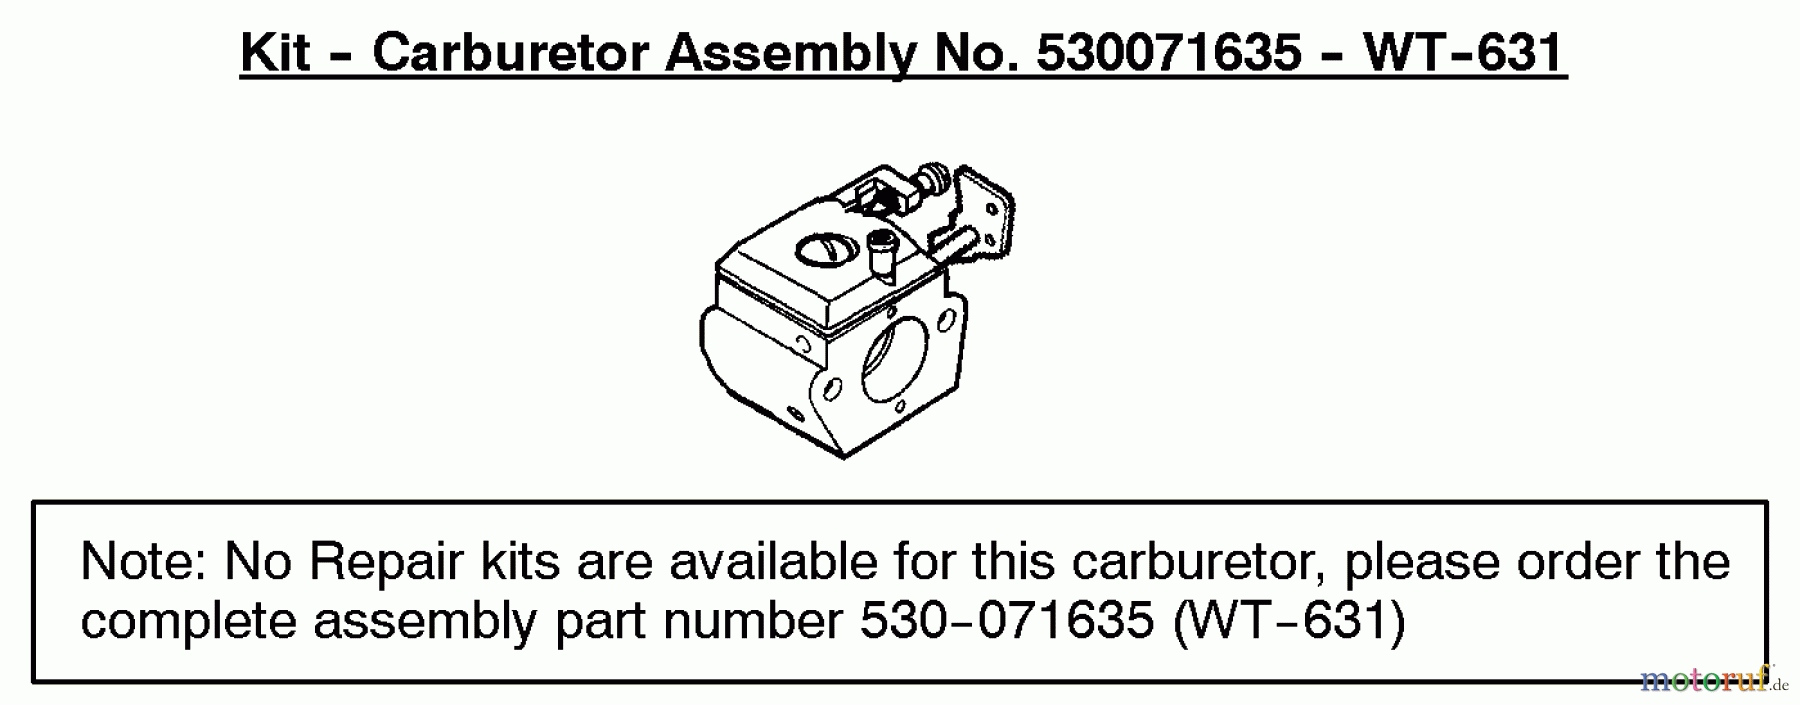  Poulan / Weed Eater Motorsensen, Trimmer PL500 (Type 3) - Weed Eater String Trimmer Carburetor Assembly (WT631) P/N 530071635